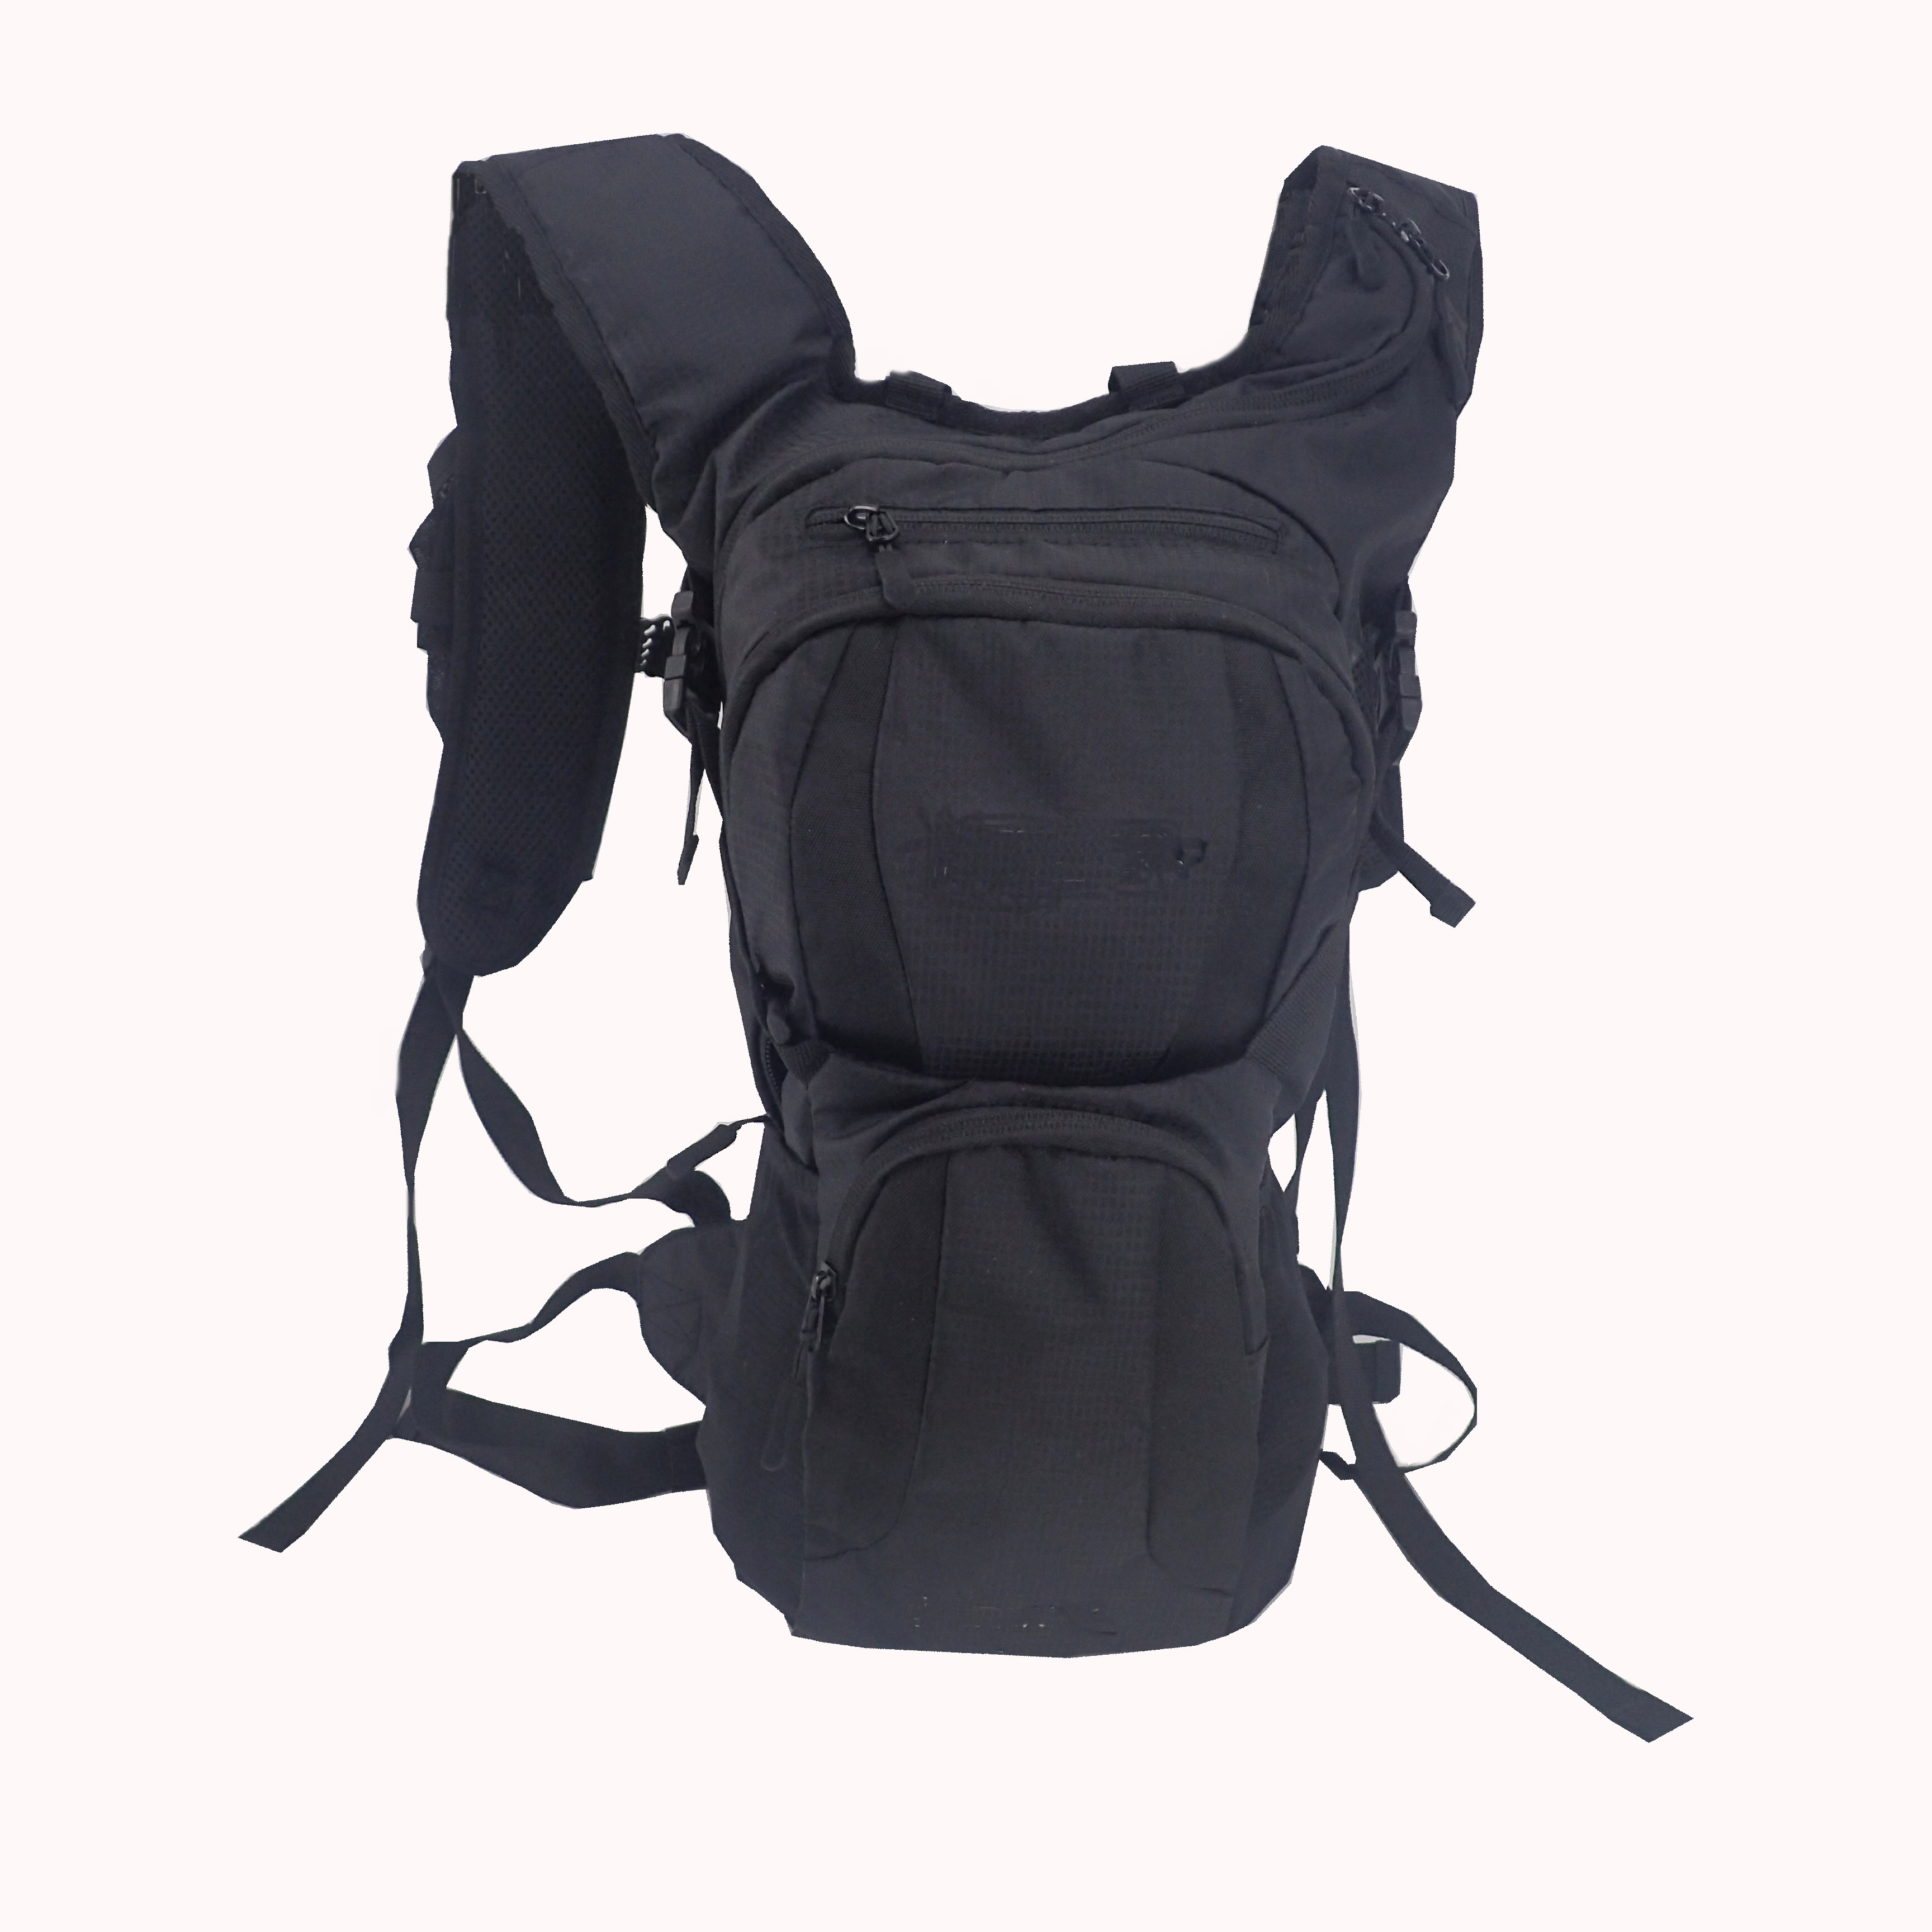 running bag/outdoor backpack/leisure backpack/camping bag/hiking bag/fashion bag/yoga bag/travel bag/backpack/promotional bag/gift/sport bag/